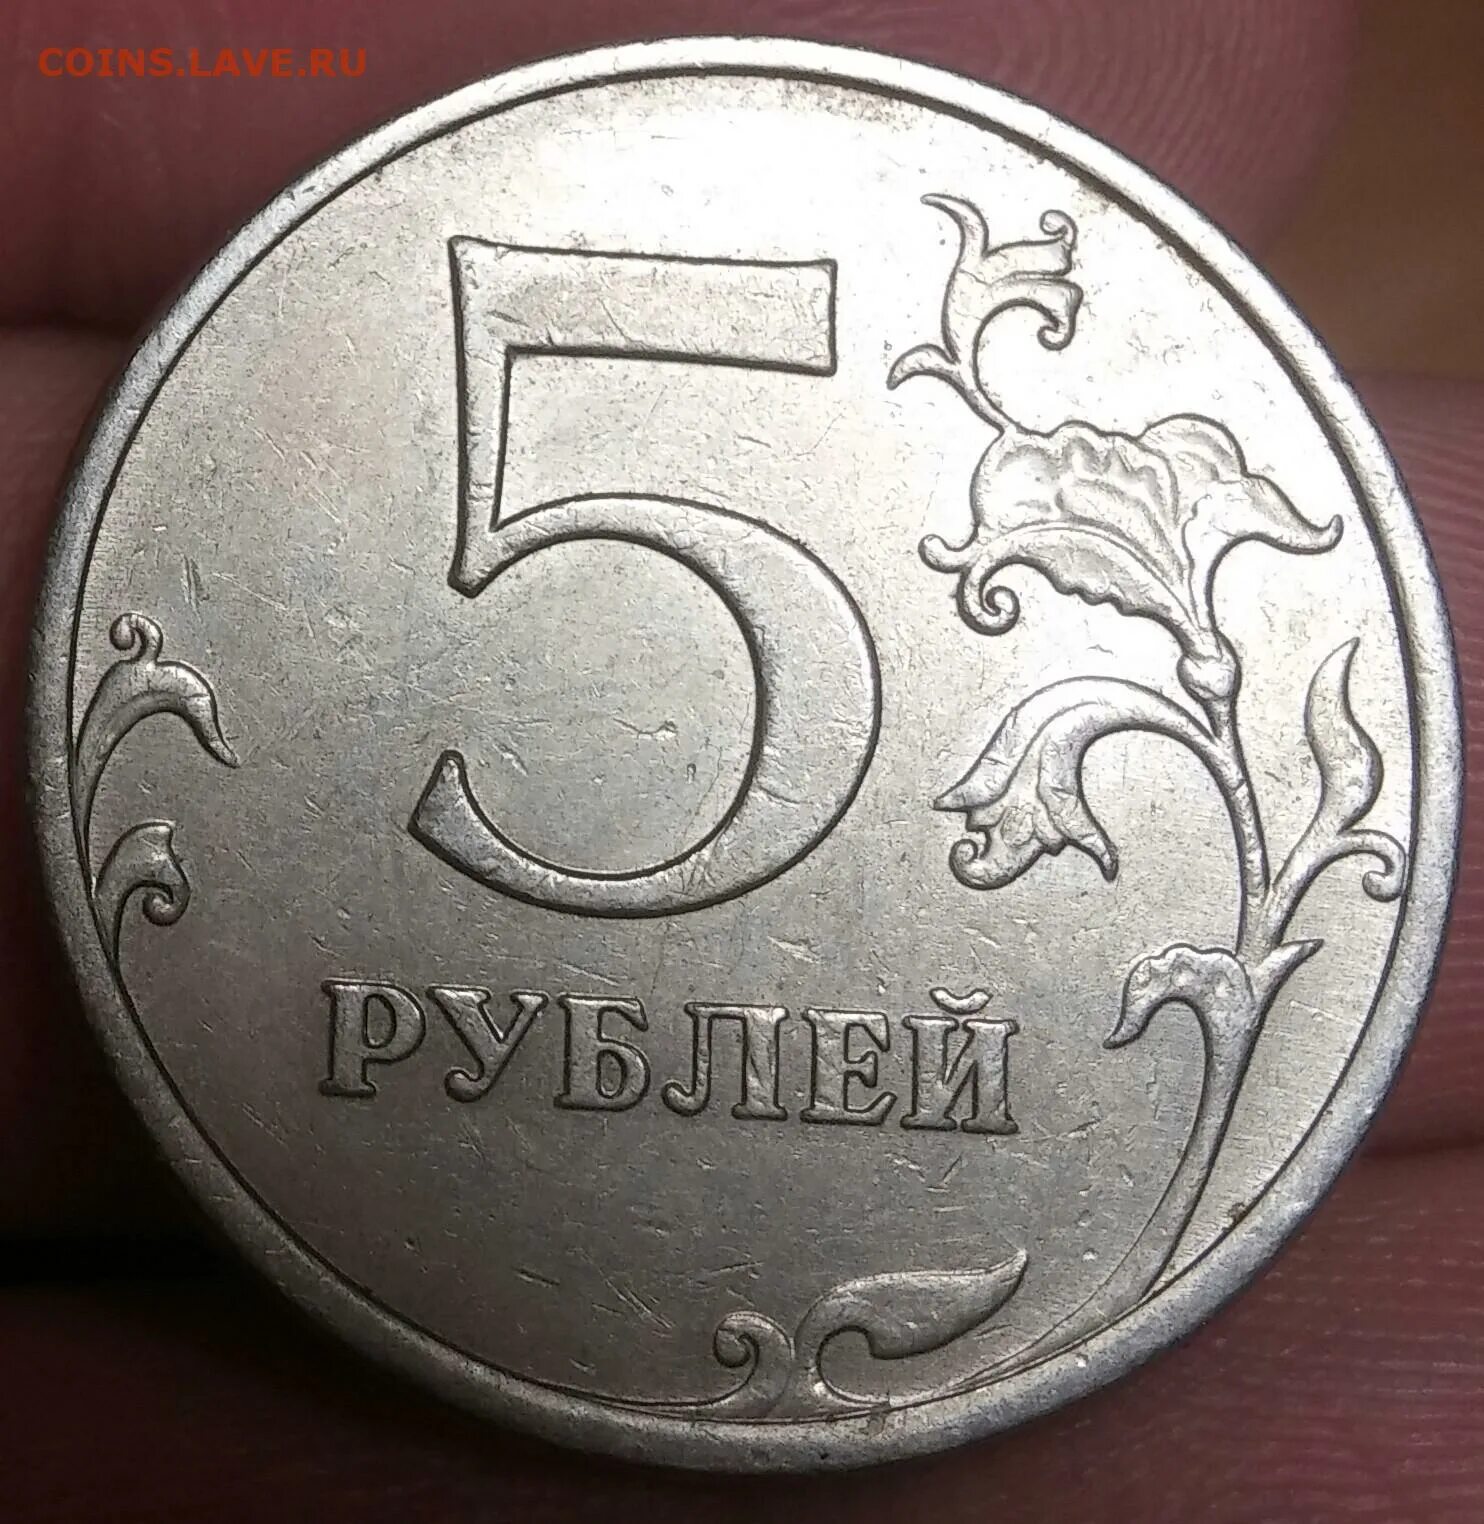 Цена булочки 5 рублей сколько стоят 3. 5 Рублей 2009 года немагнитные. 5 Рублей 2009 года не магнитная. Пять рублей 2009 года. 5 Рублей 2009 раскол.